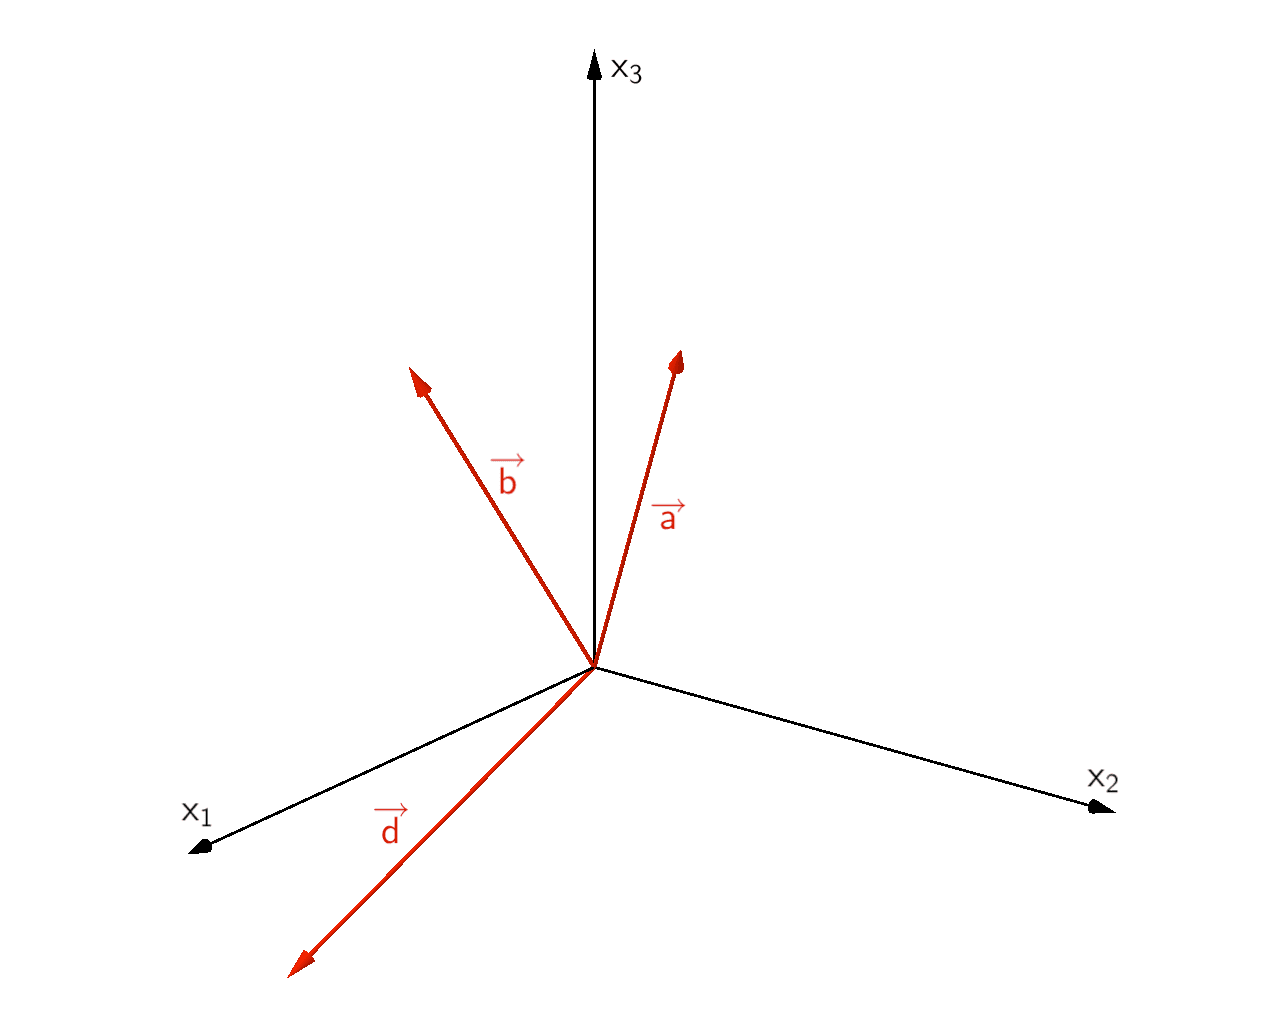 Die drei linear unabhängigen Vektoren spannen den Raum R³ auf.